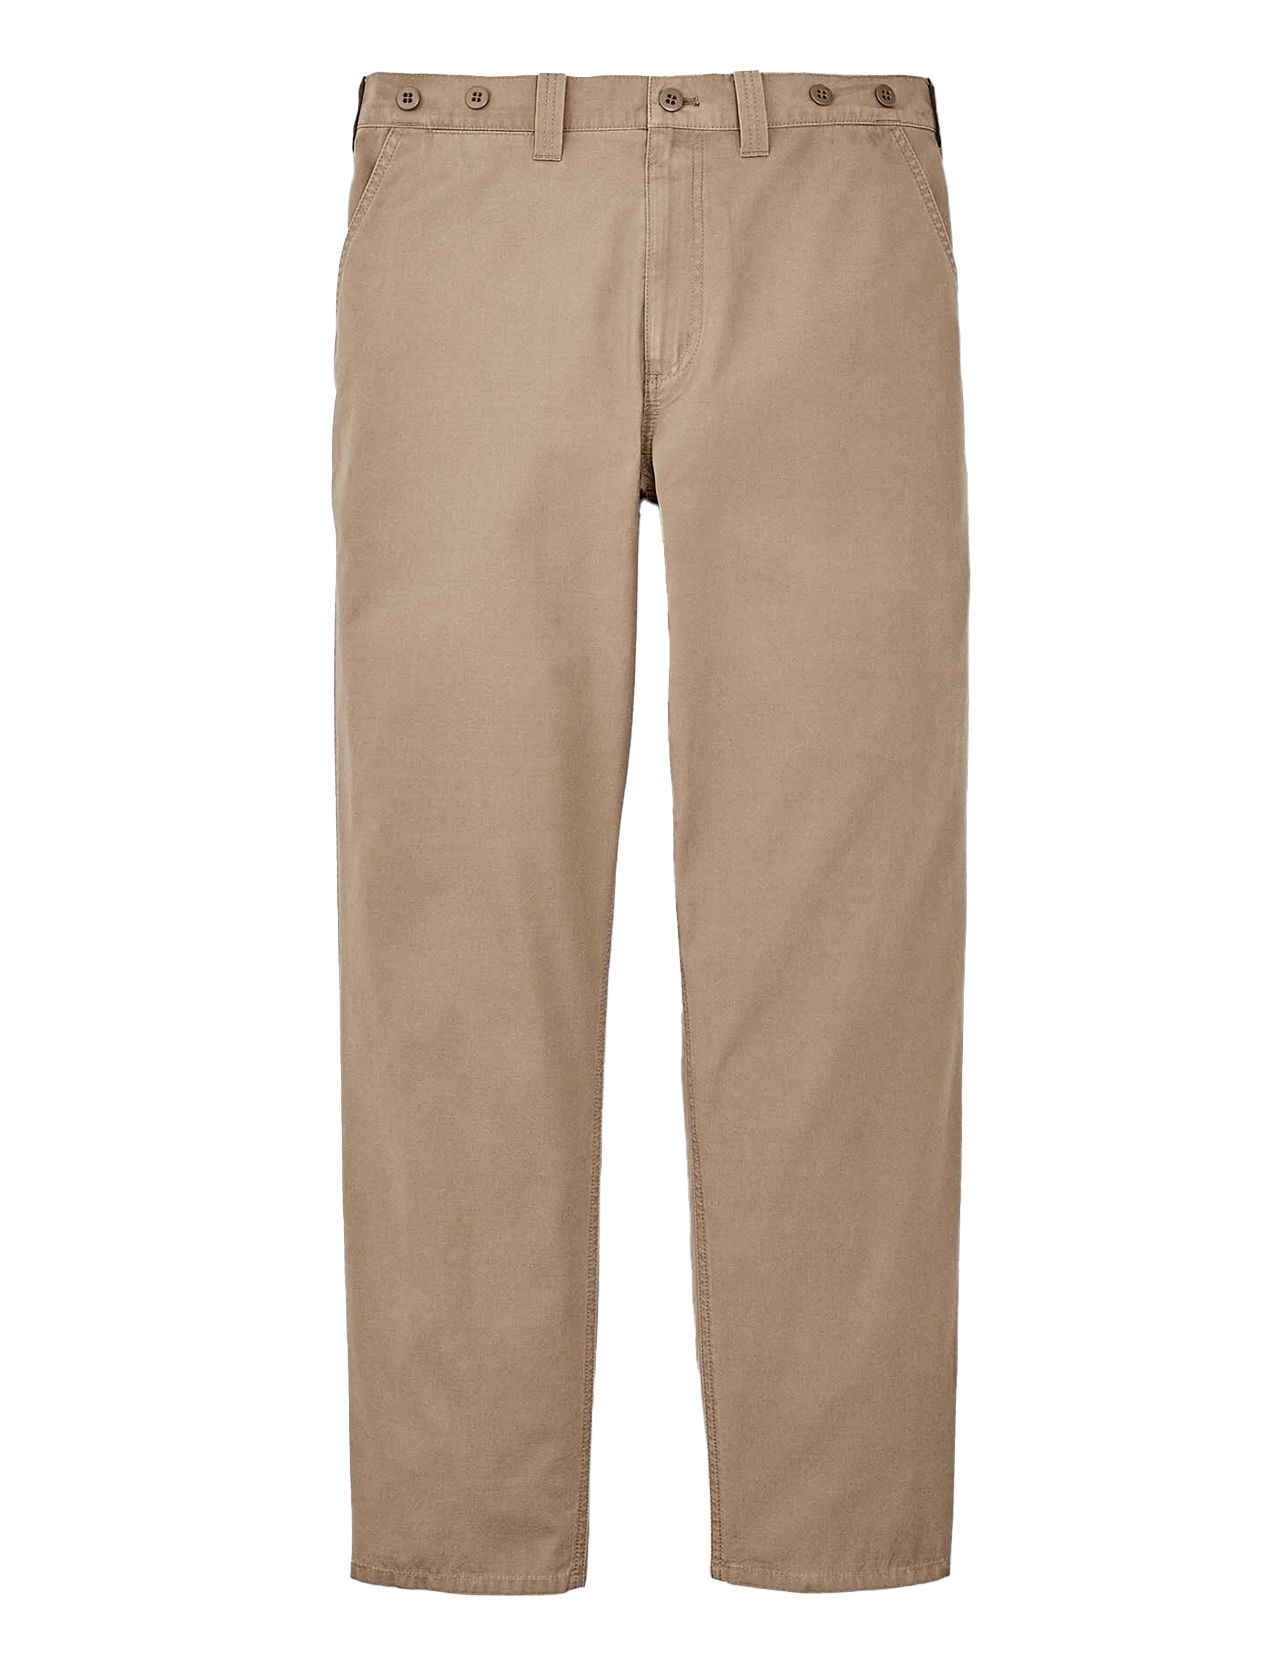 Filson---Safari-Cloth-Pants---Safari-Khaki-1